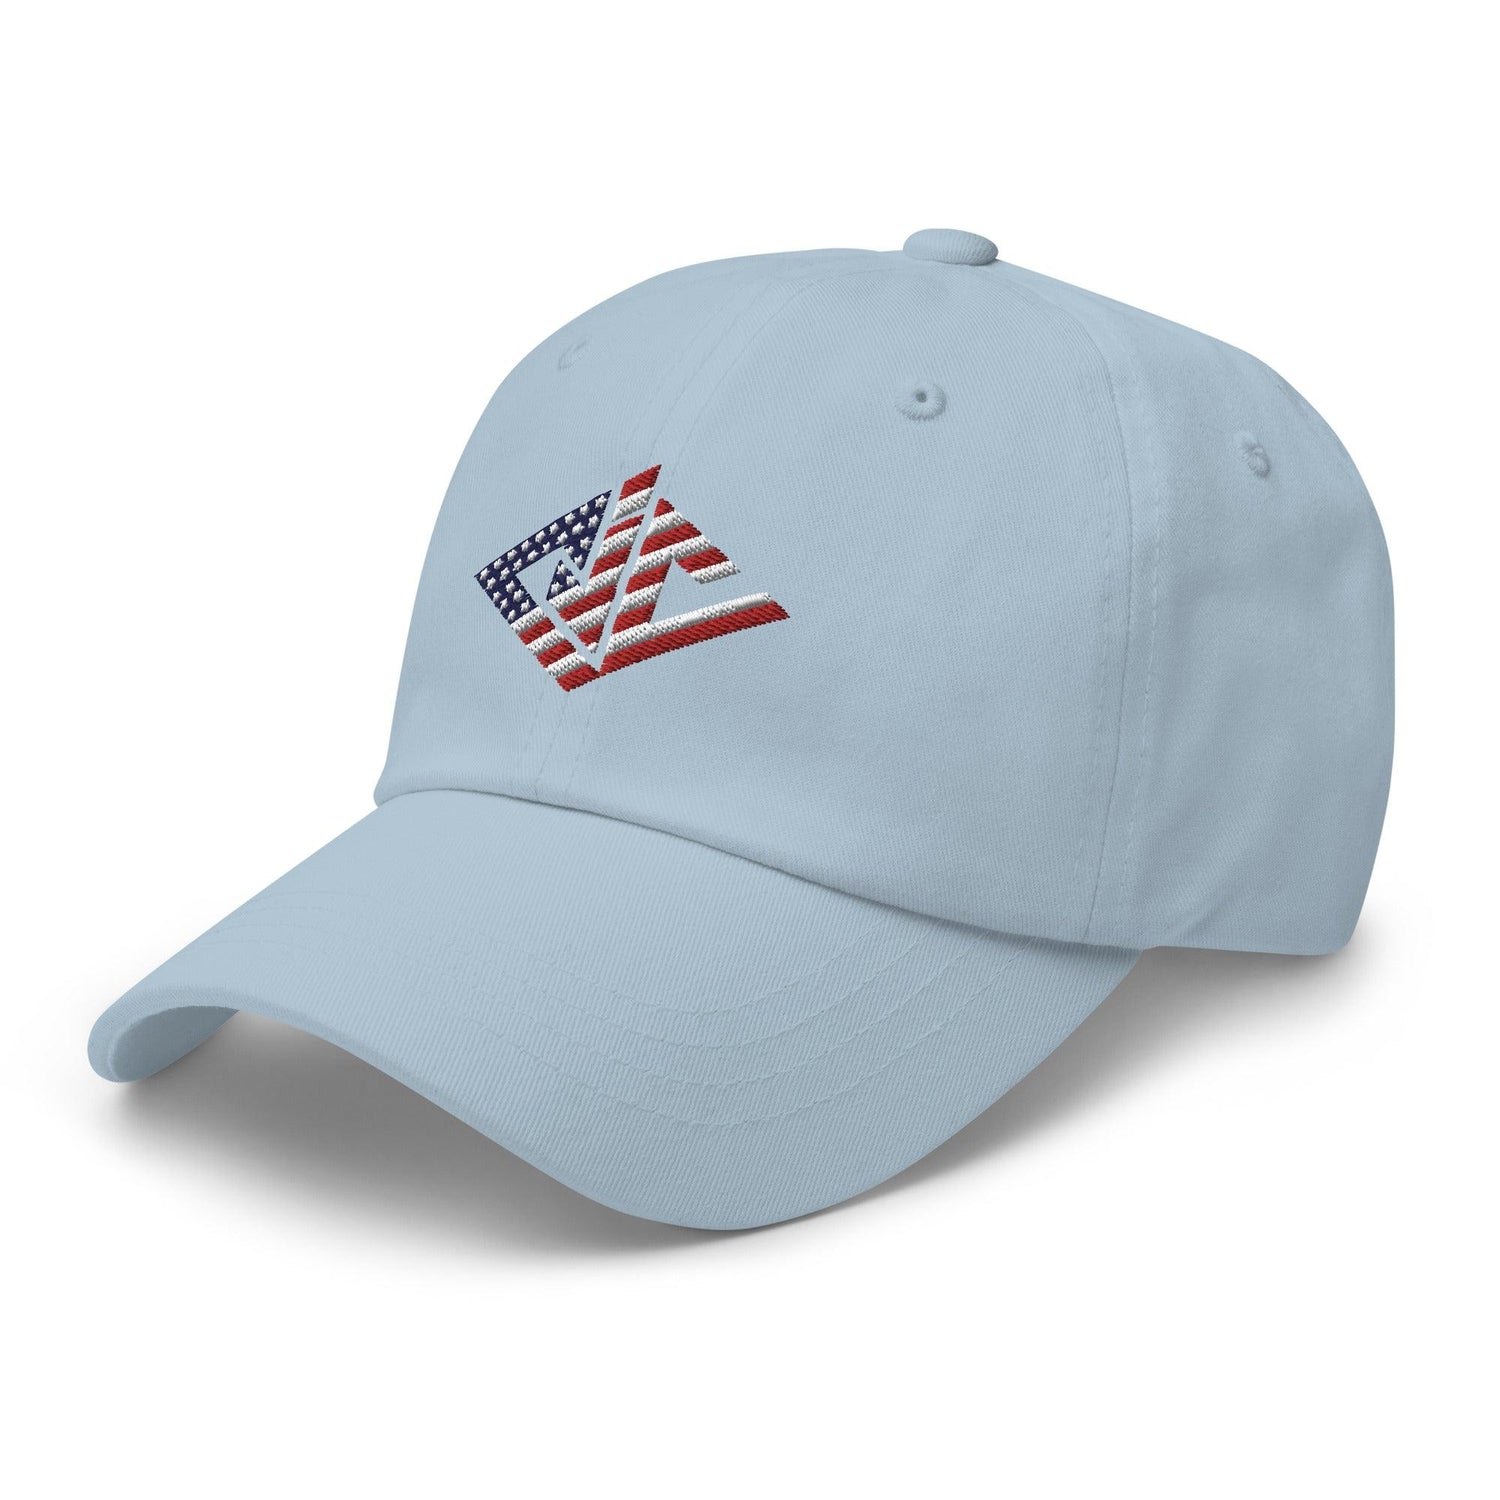 CJ Cummings “Signature” hat - Fan Arch